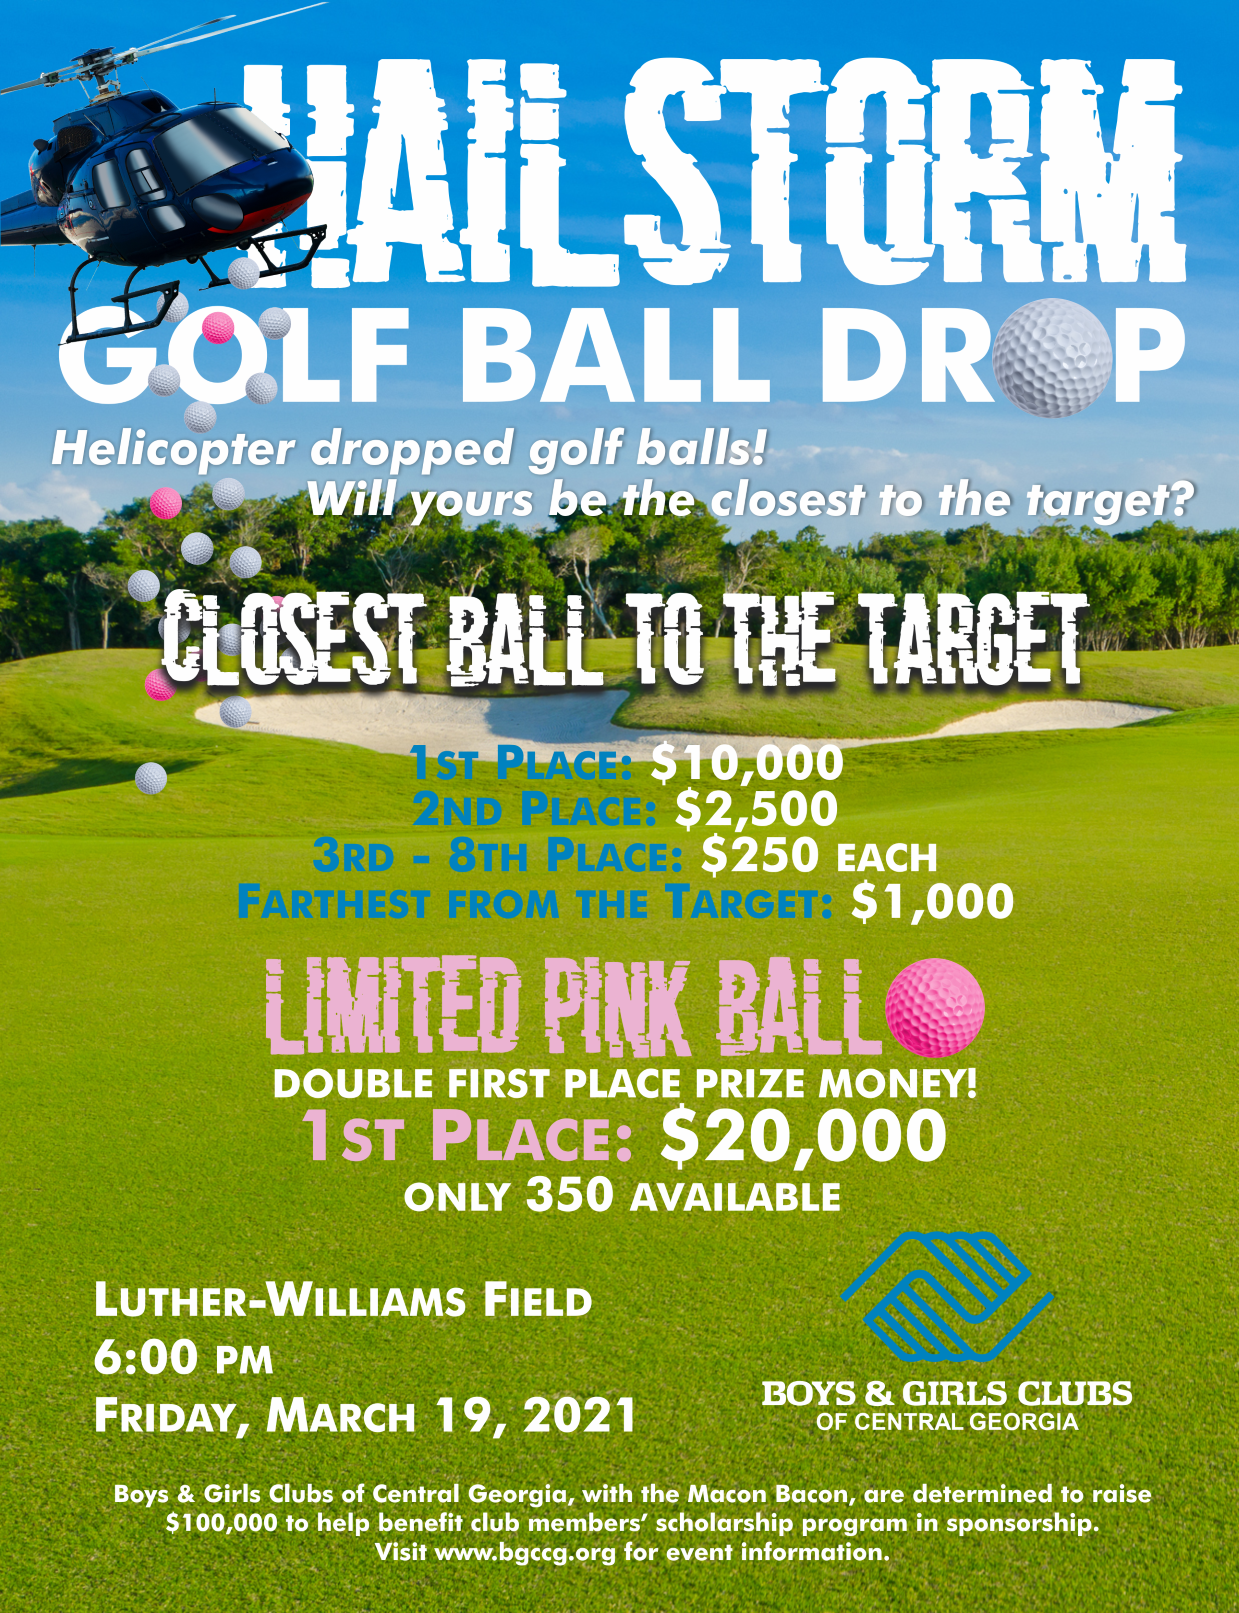 WR Hailstorm Golf Ball Drop